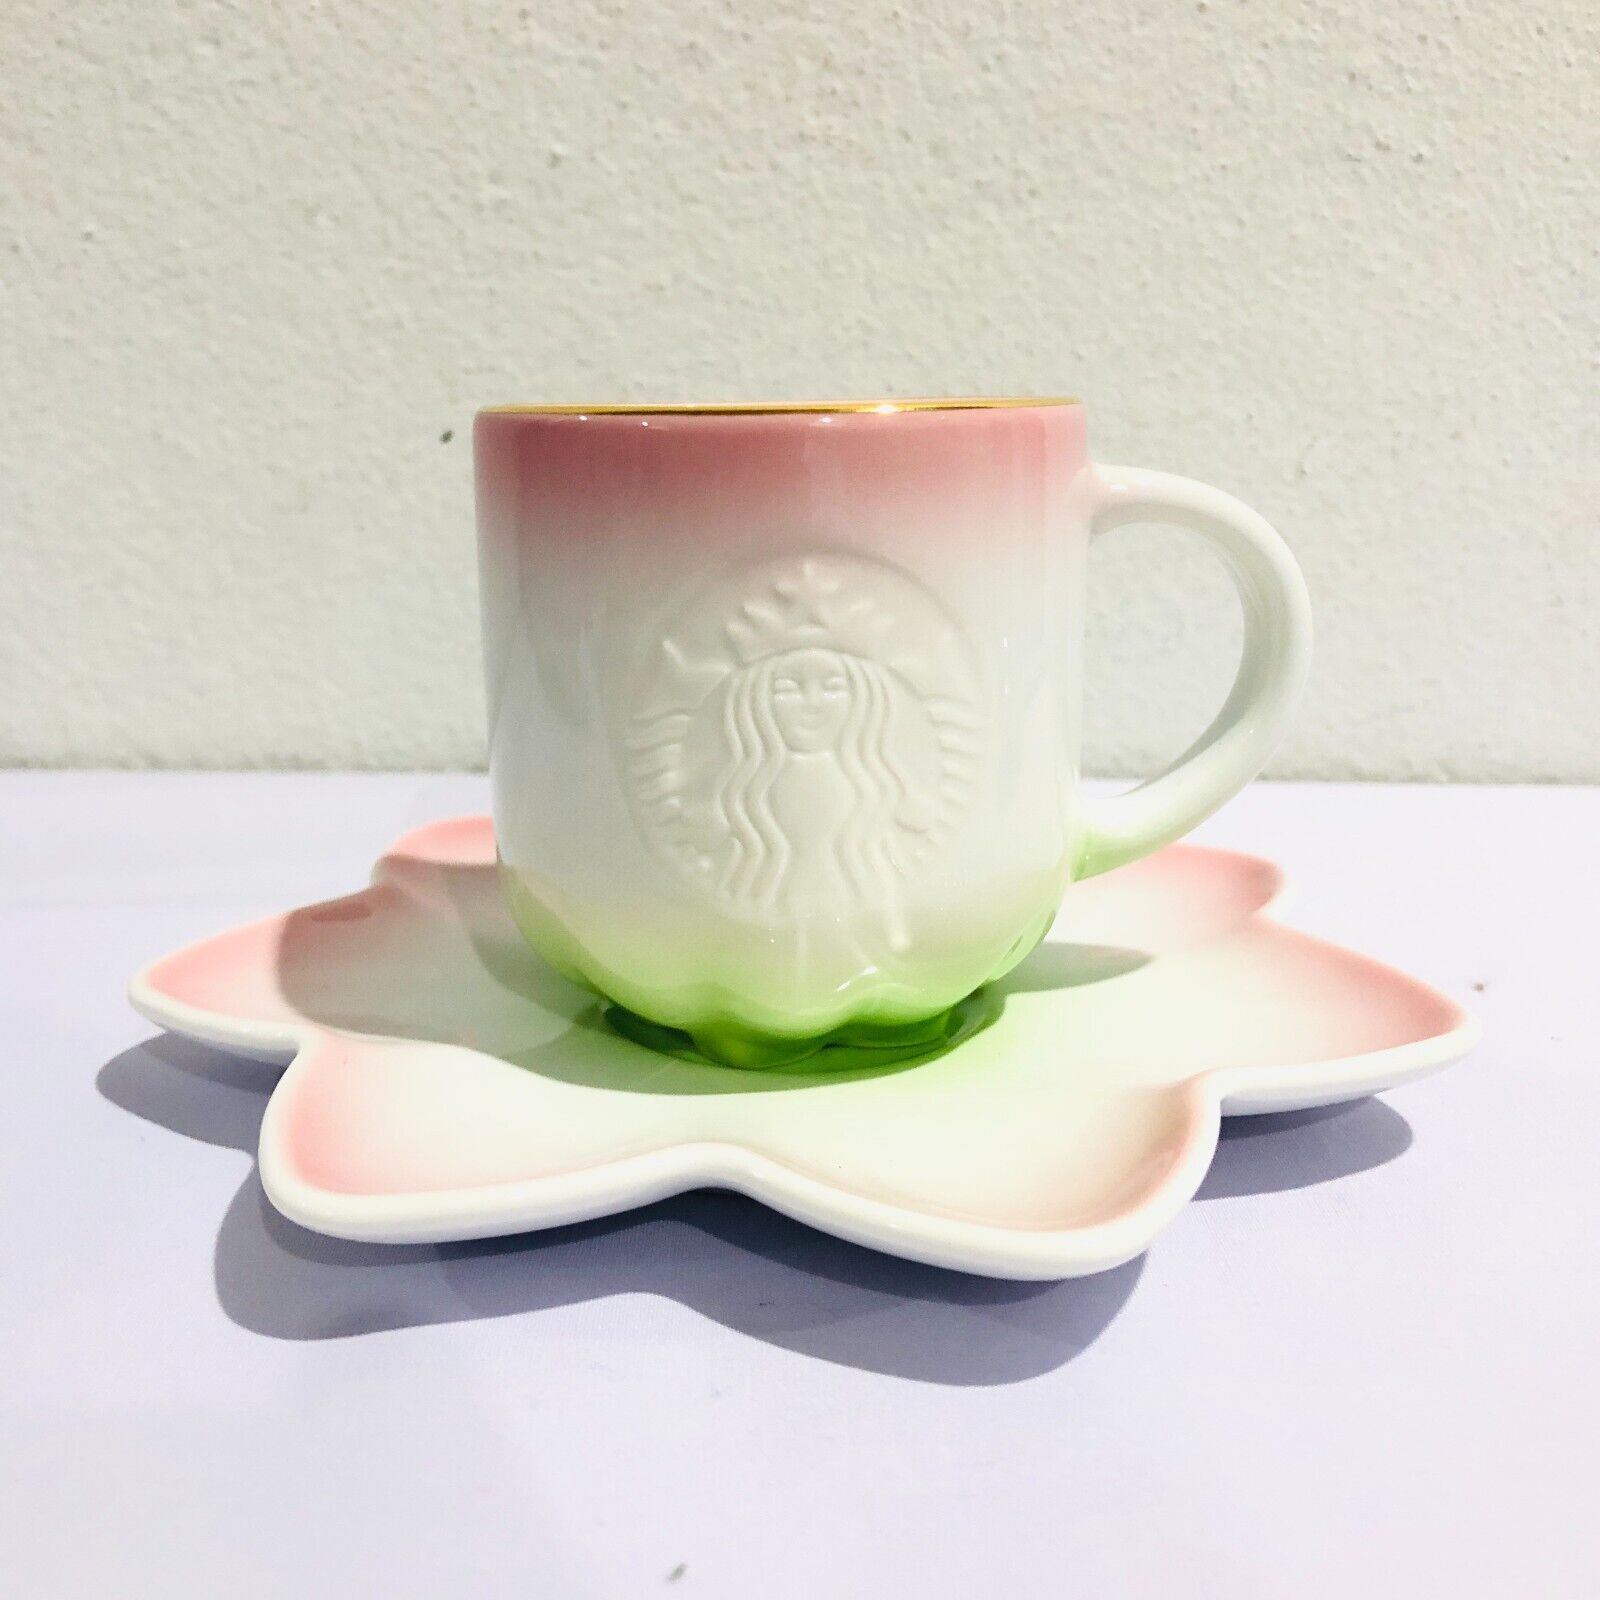 Starbucks Ceramic Saucer Cup 3 oz.Pink Lotus